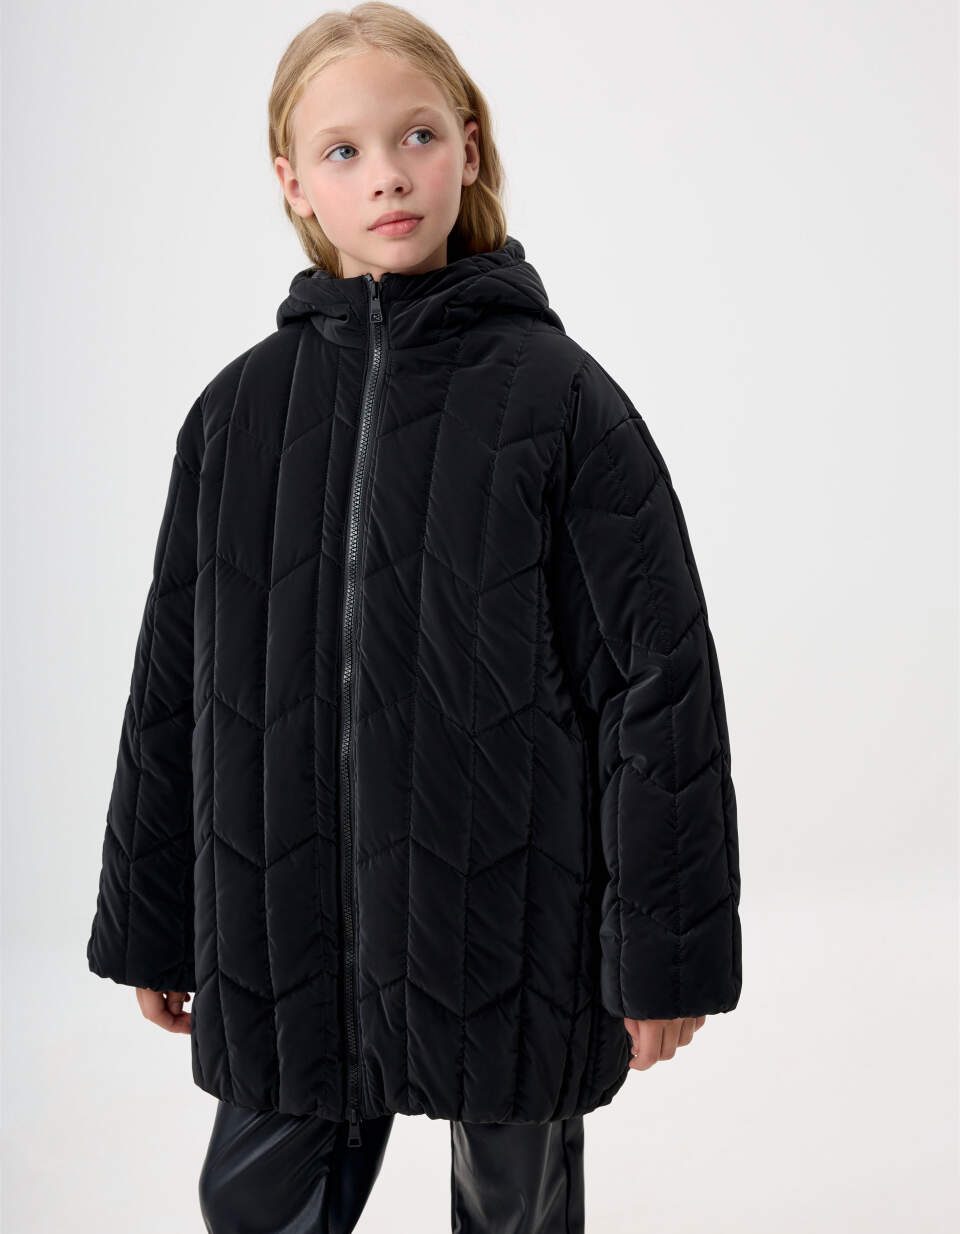 Стеганое пальто с капюшоном для девочек цена и фото